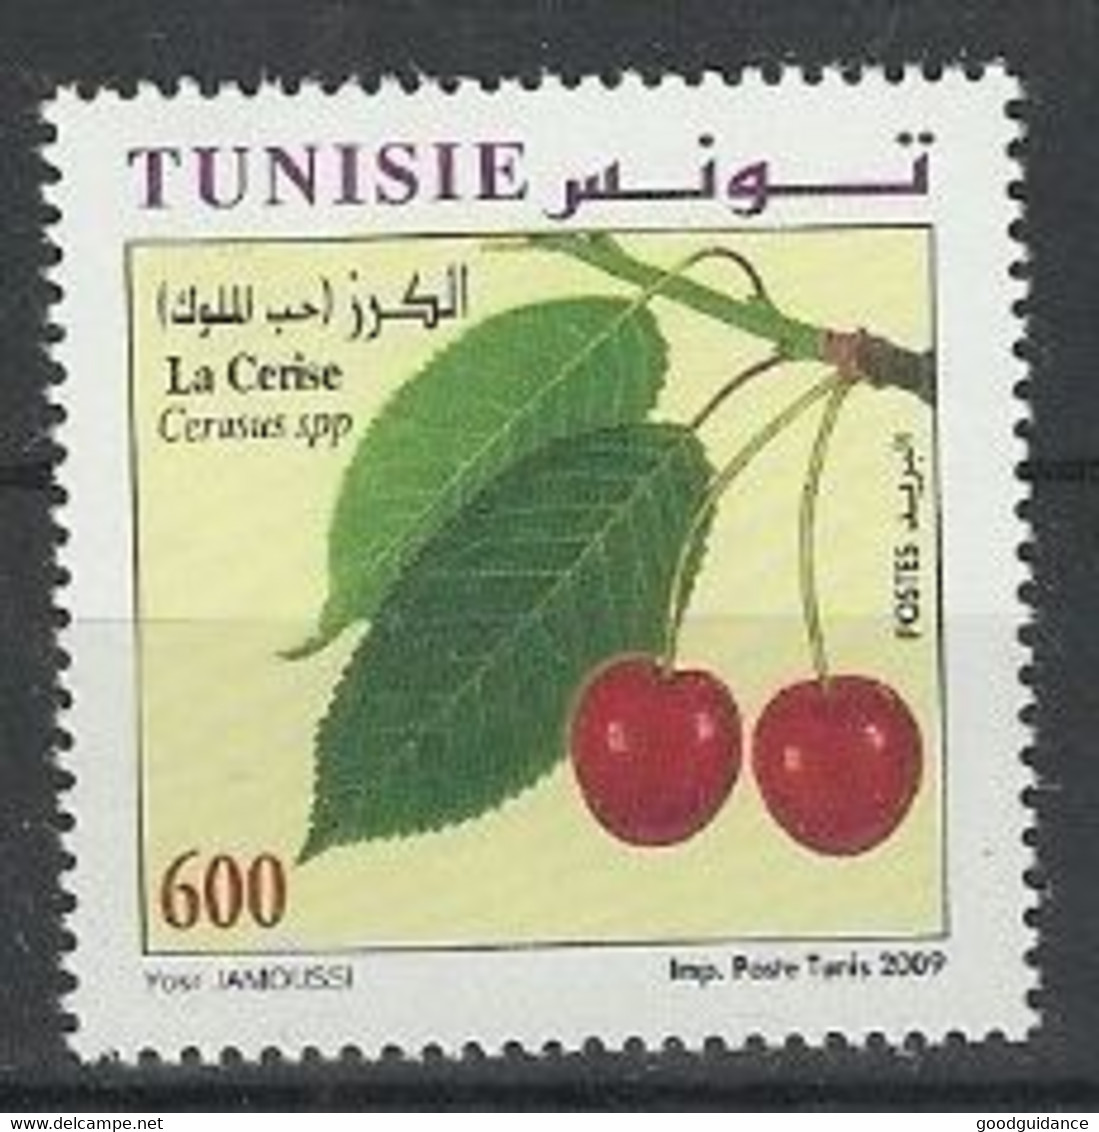 2009 -Tunisia-Tunisie/ Fruits Of Tunisia- Fruits De Tunisie : The Cherry -  La Cerise - MNH** - Tunisie (1956-...)